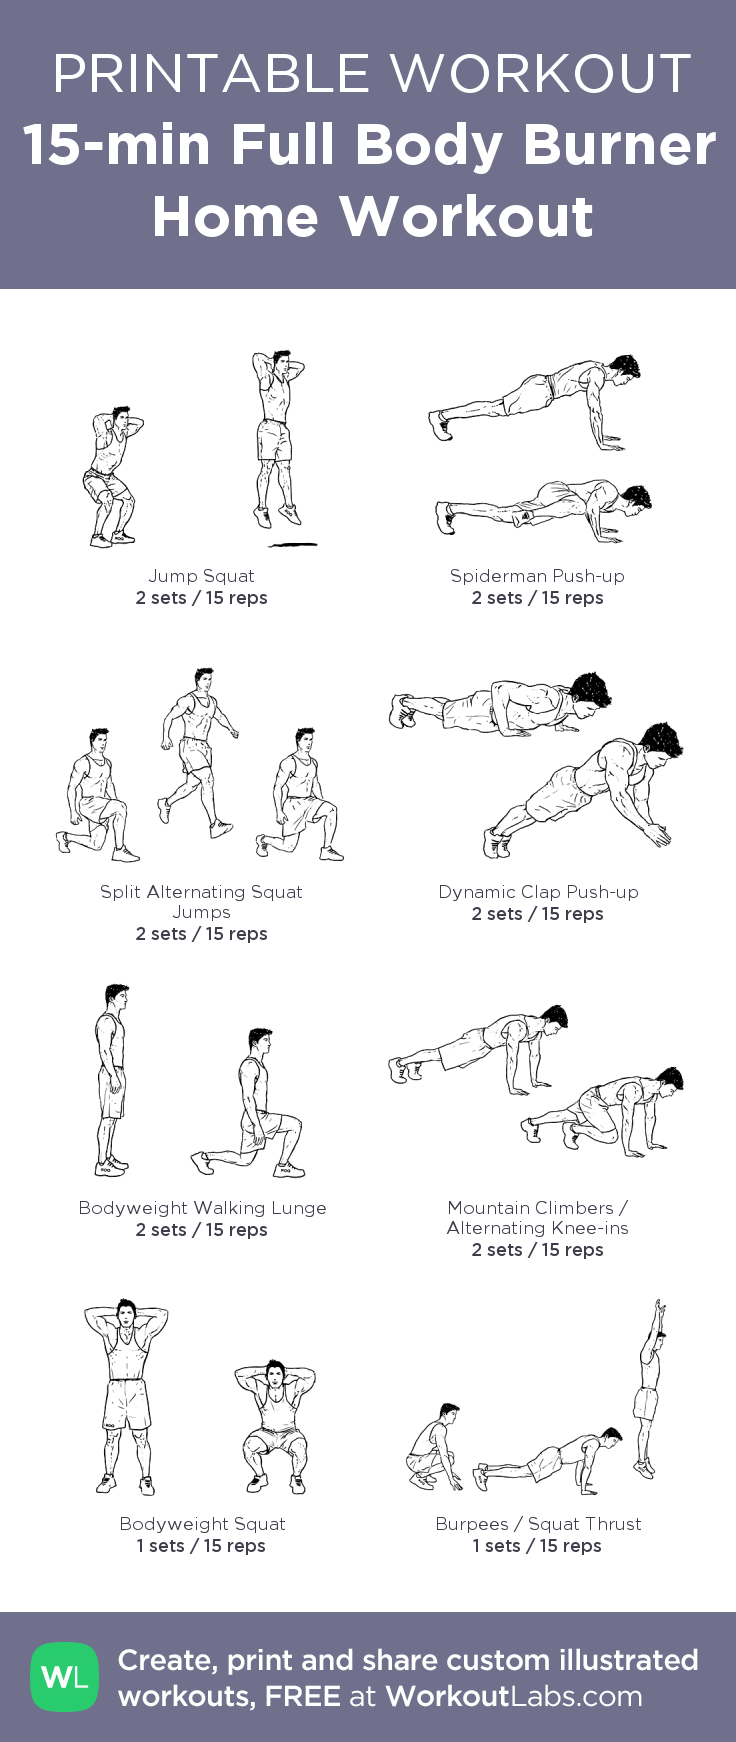 15-min Full Body Burner workout